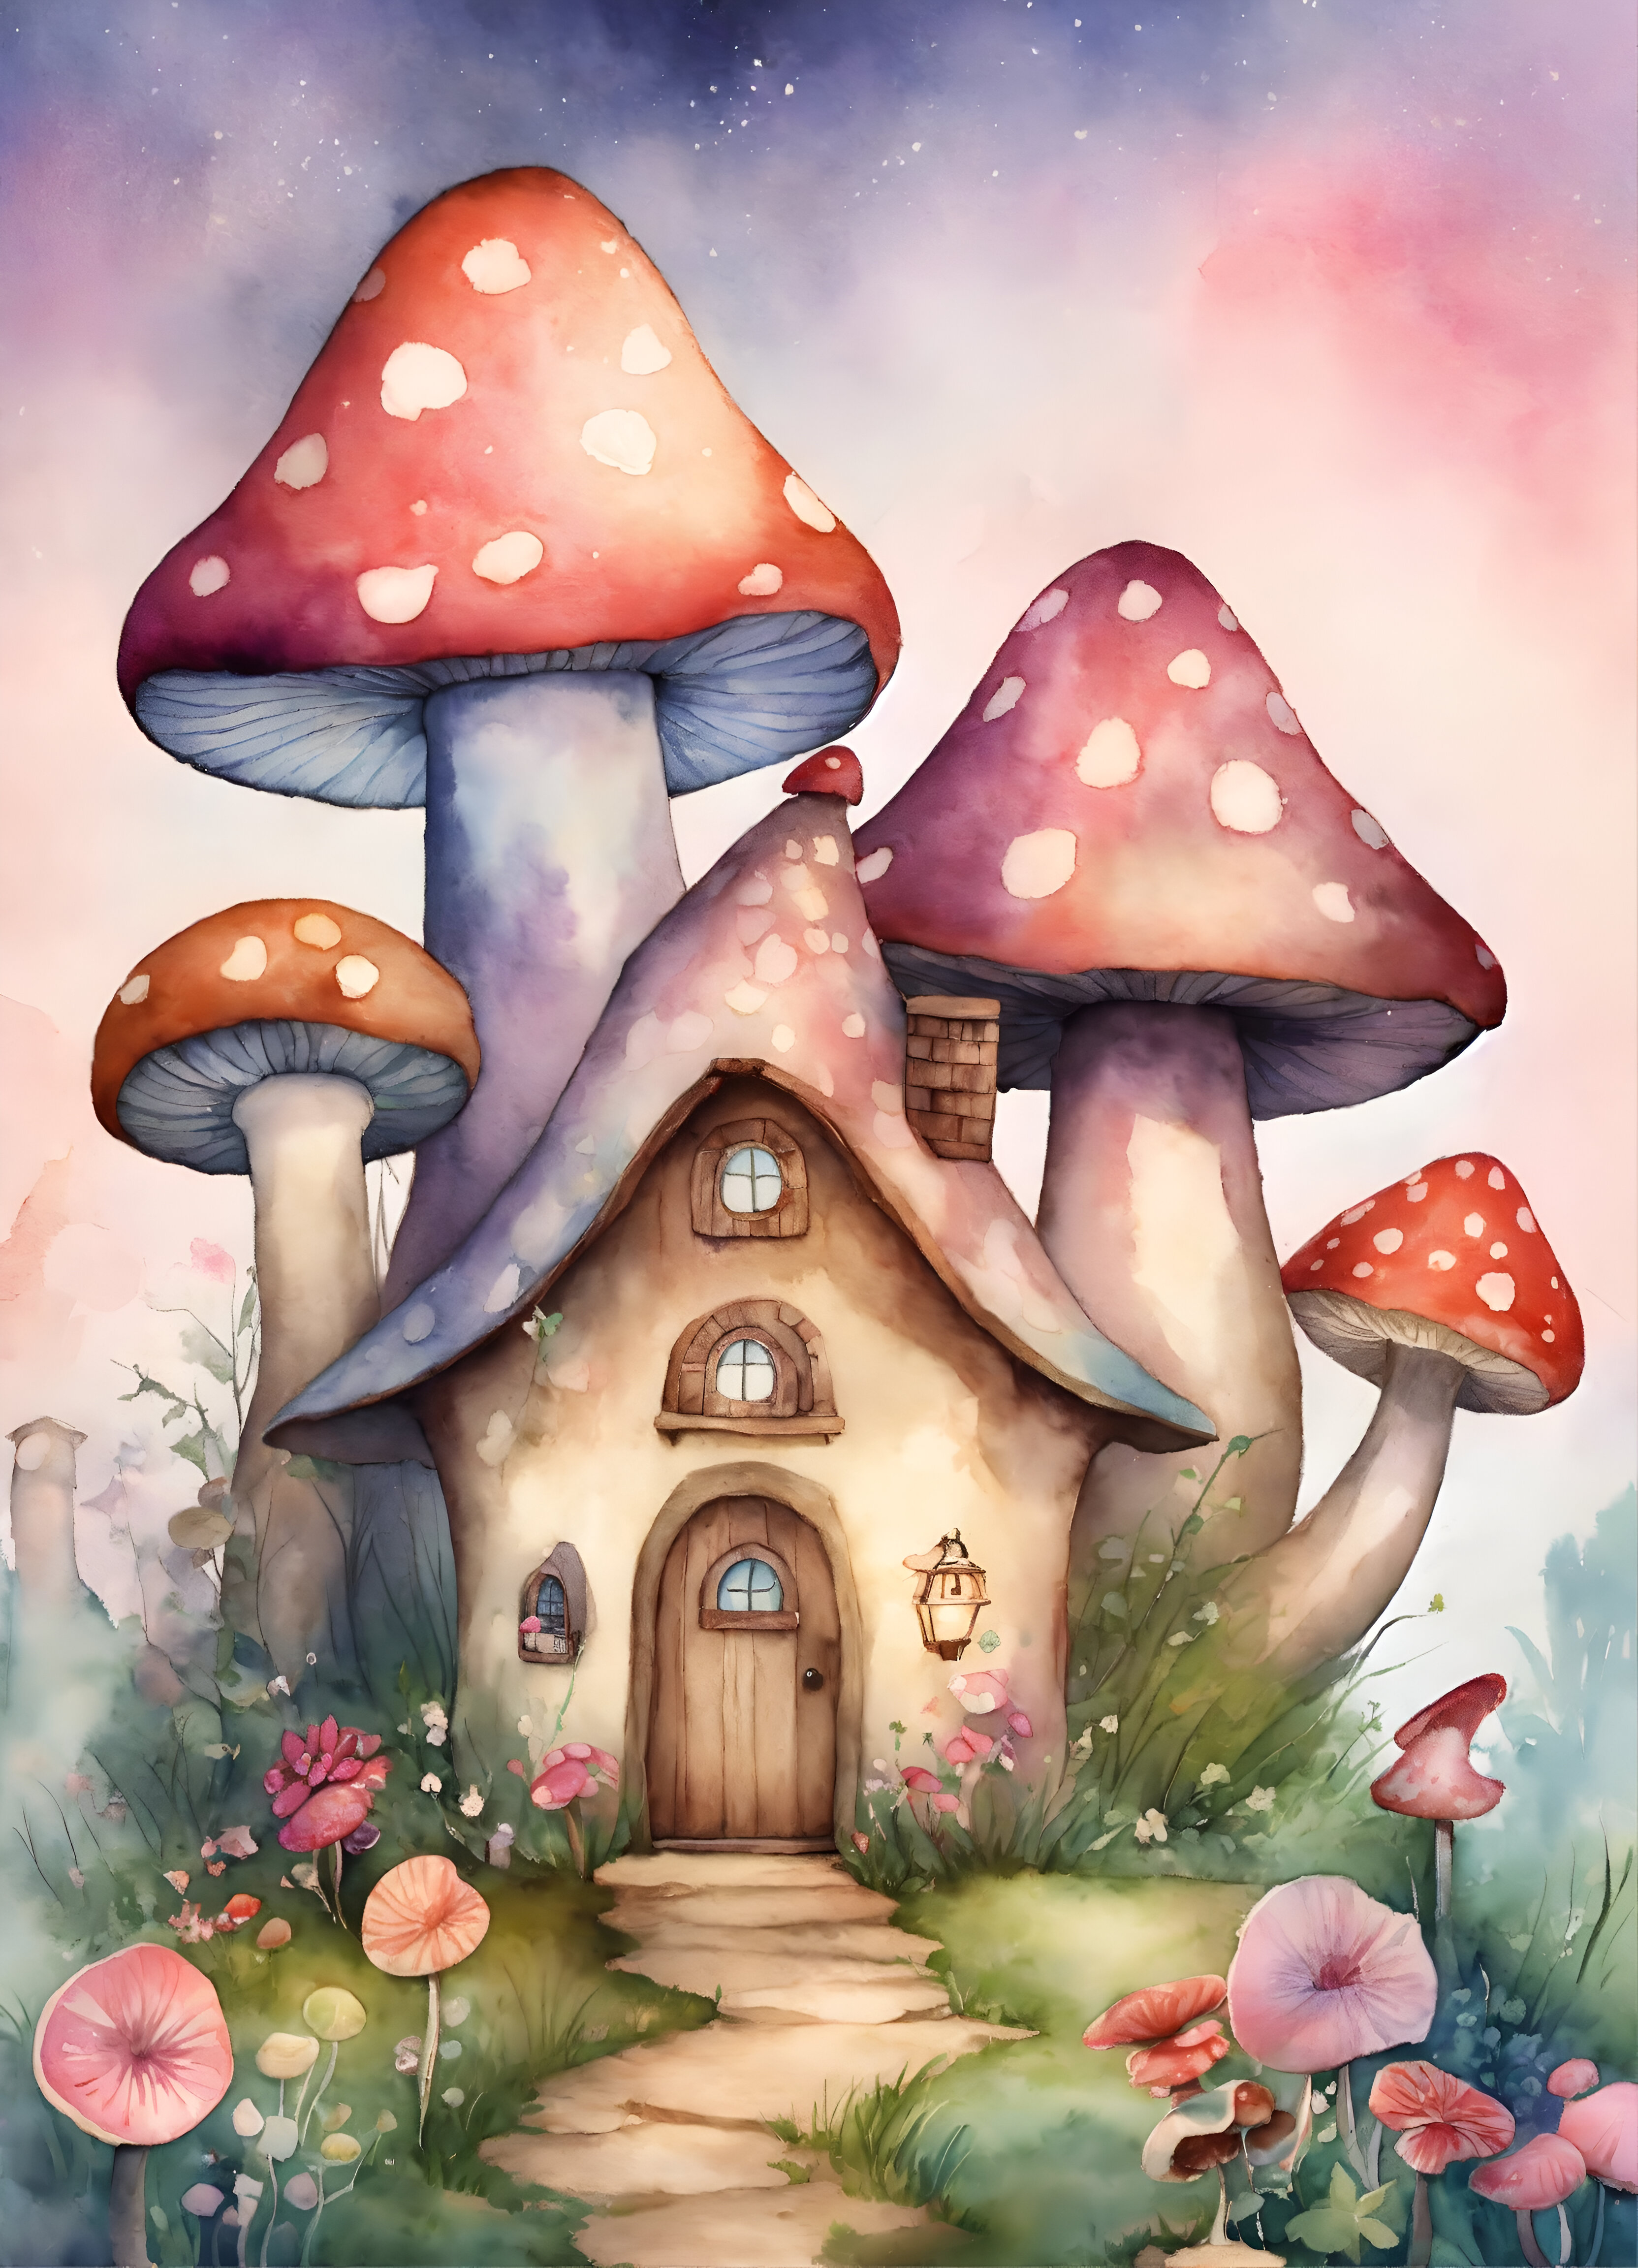 Mushroom House